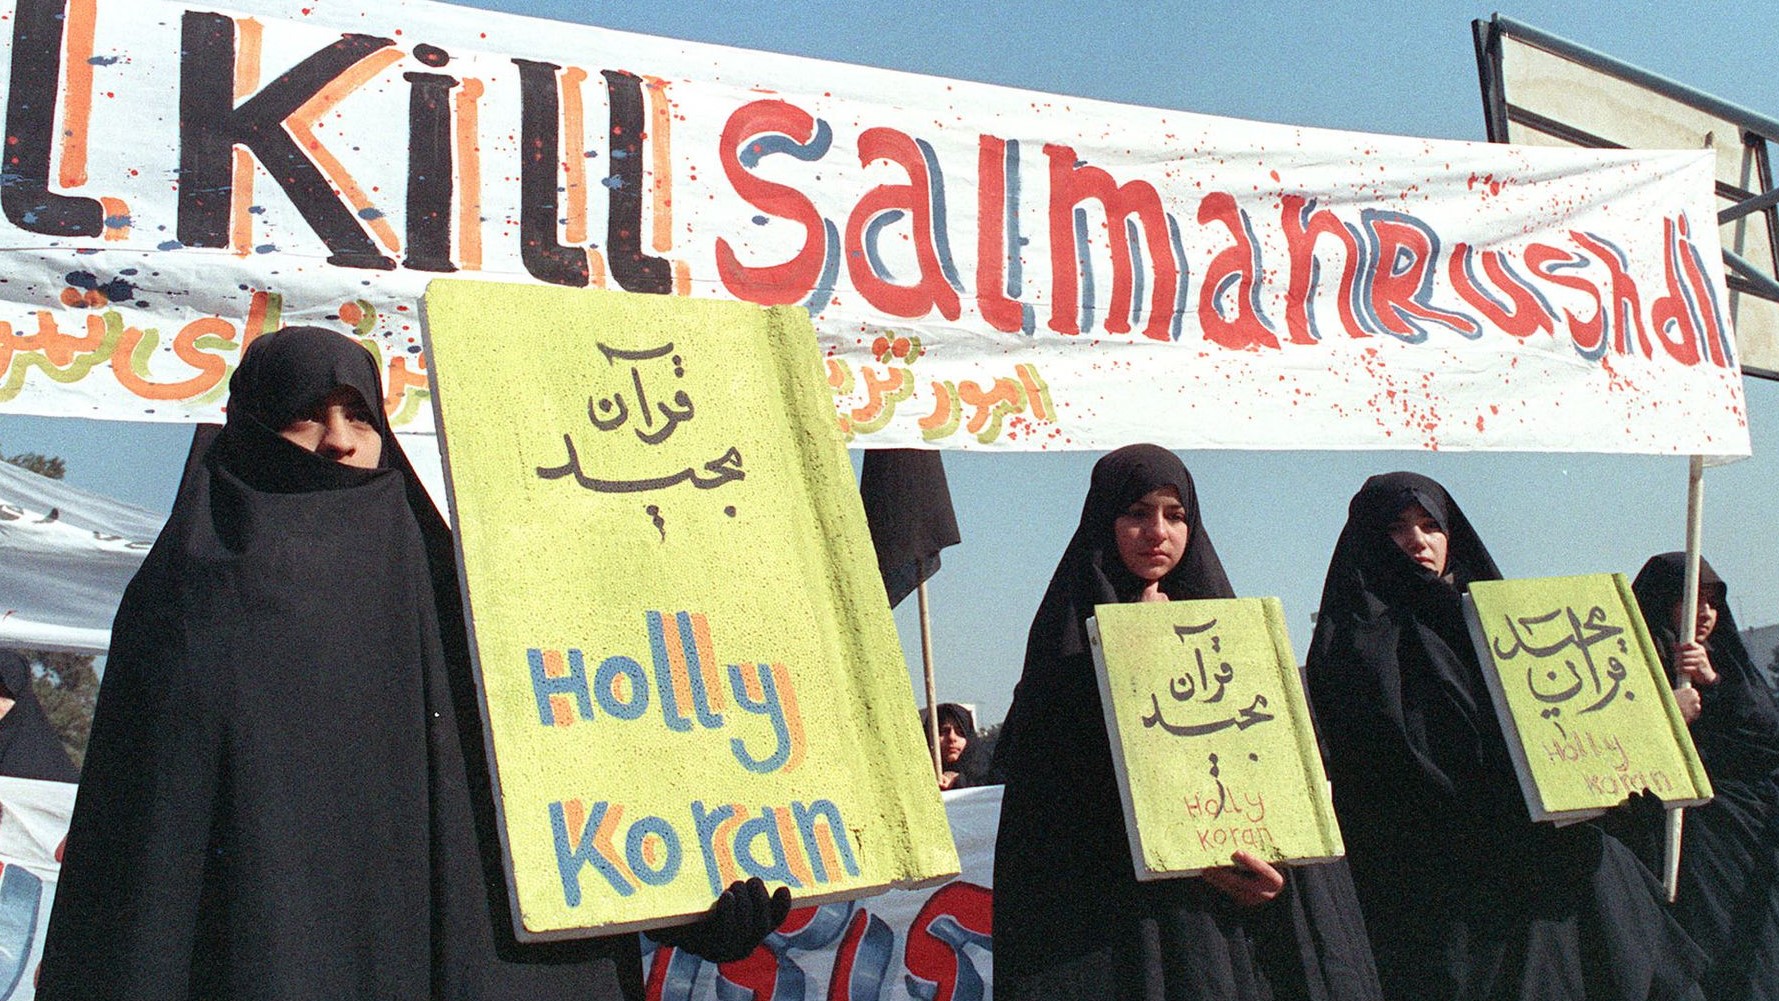 في هذه الصورة الأرشيفية التي التقطت في 17 فبراير/شباط 1989، تظهر نساء إيرانيات يحملن لافتات كتب عليها 'هولي كوران' و'اقتلوا سلمان رشدي' خلال مظاهرة ضد الكاتب البريطاني سلمان رشدي في طهران.